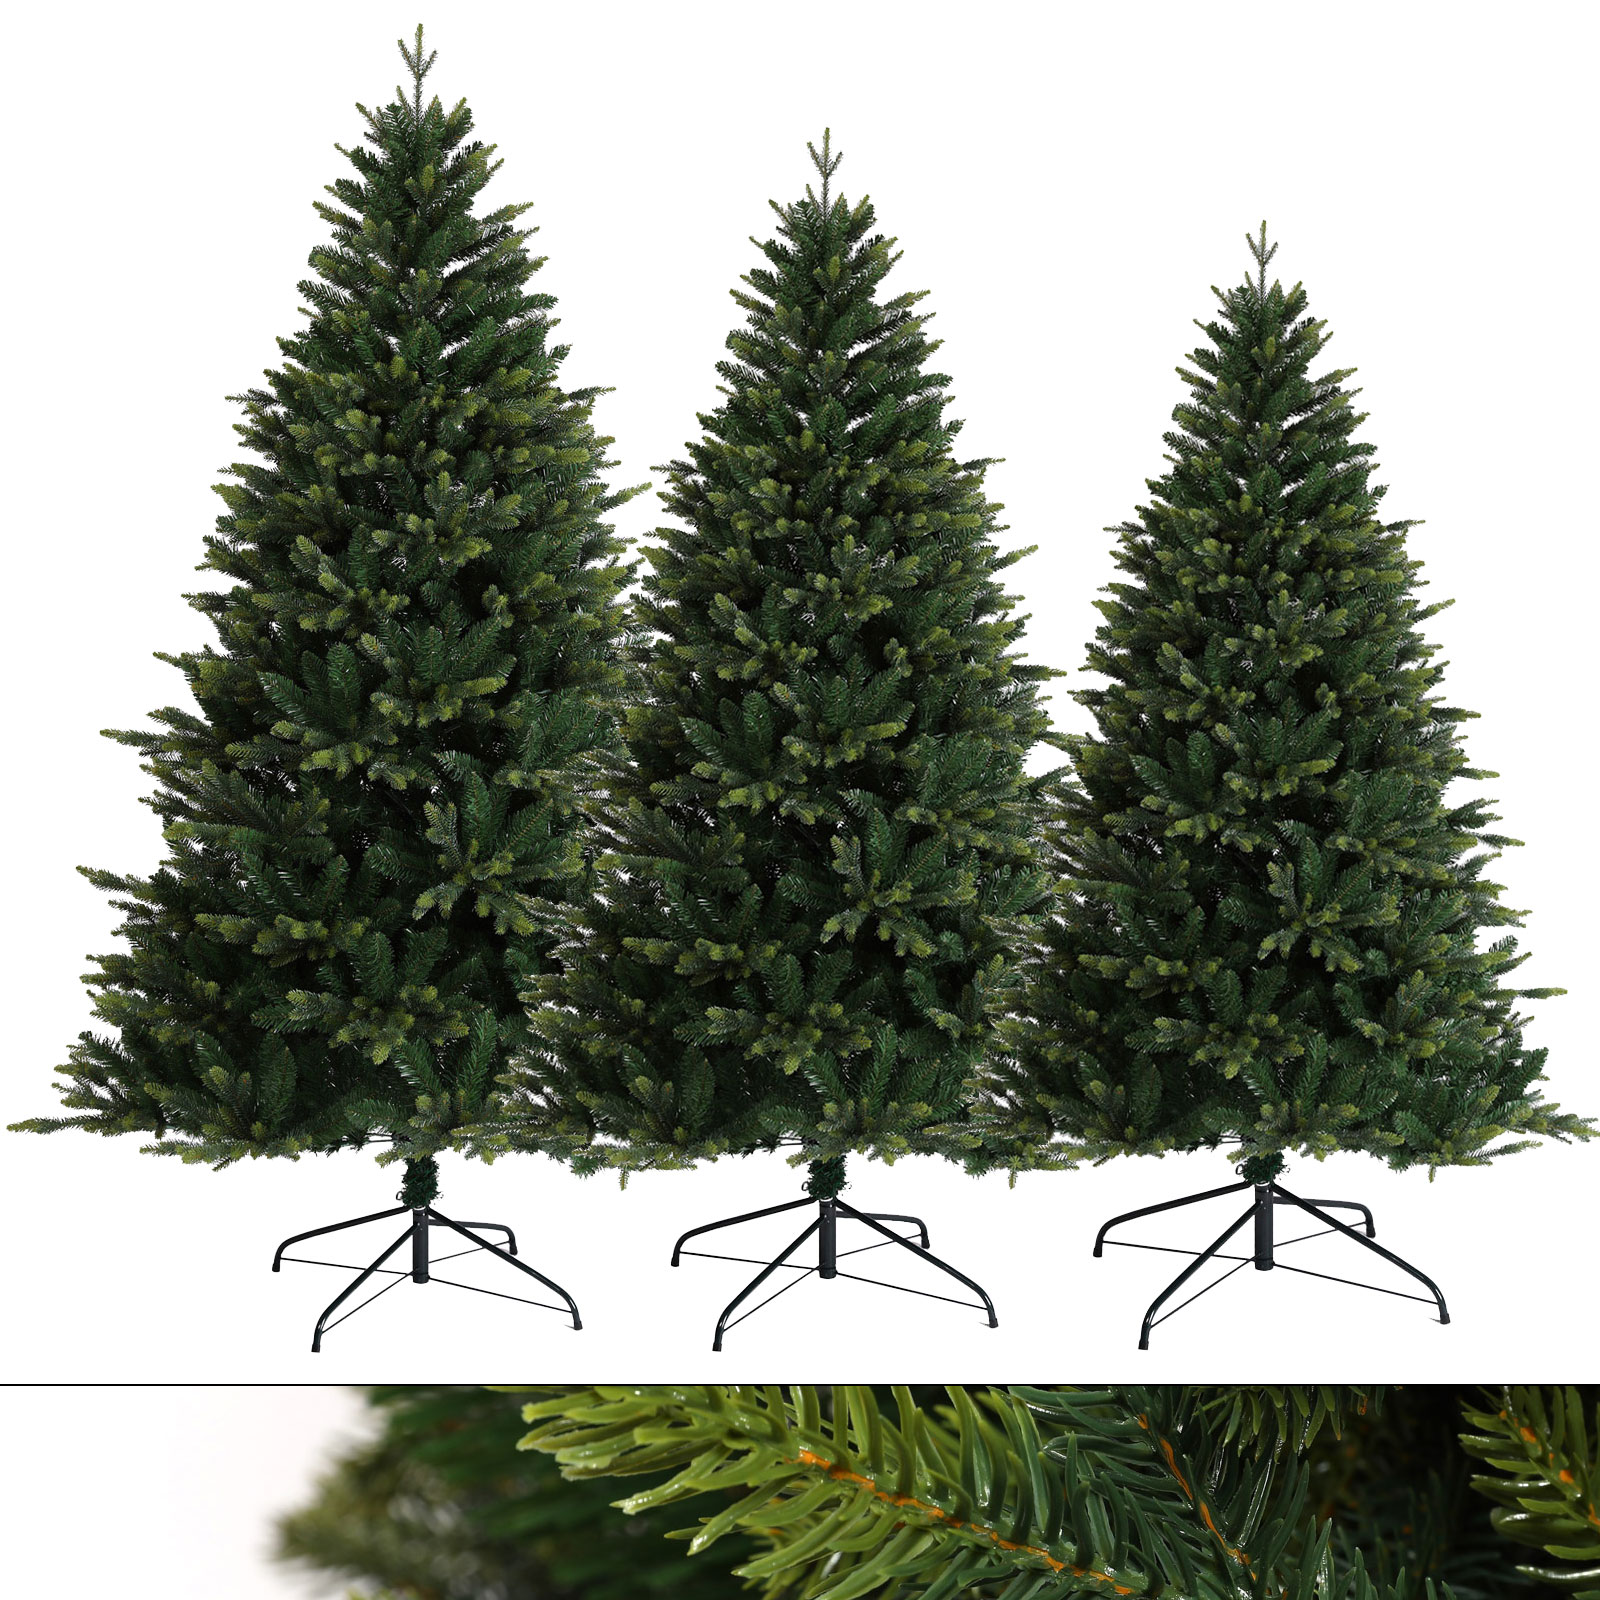 SVITA künstlicher Weihnachtsbaum hochwertig Tannenbaum Kunstbaum PE PVC 180 cm